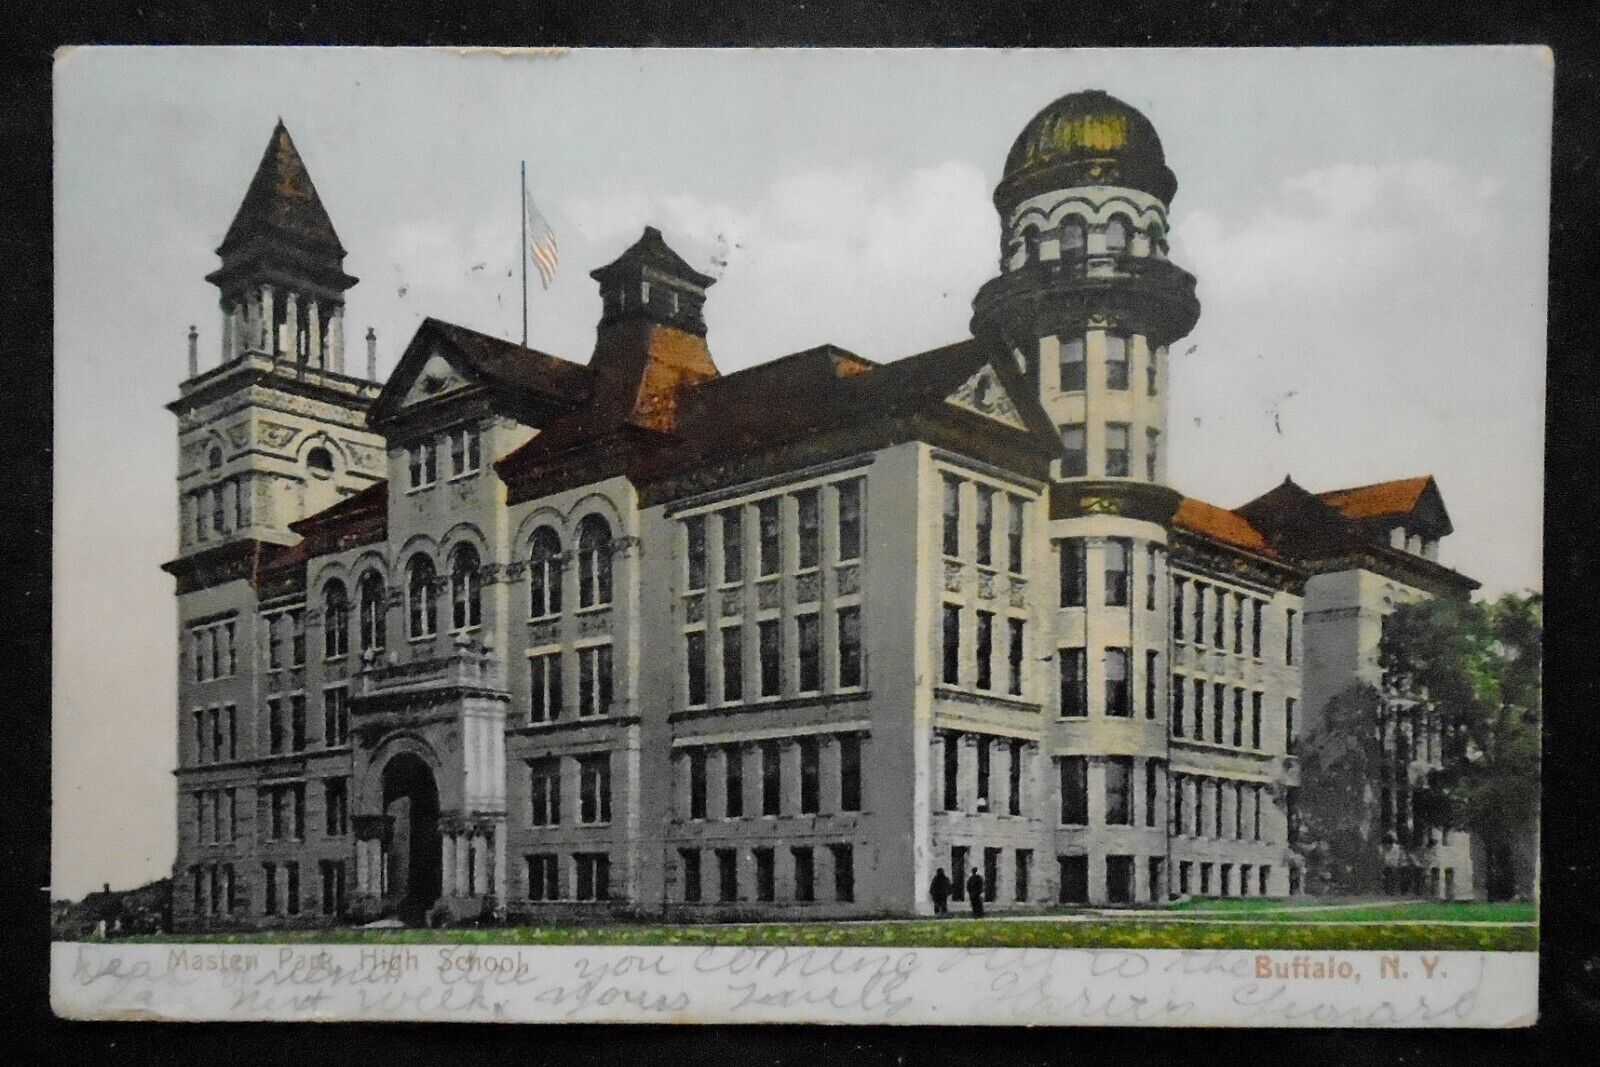 Buffalo, NY, Masten Park High School, undivided back, pm 1907